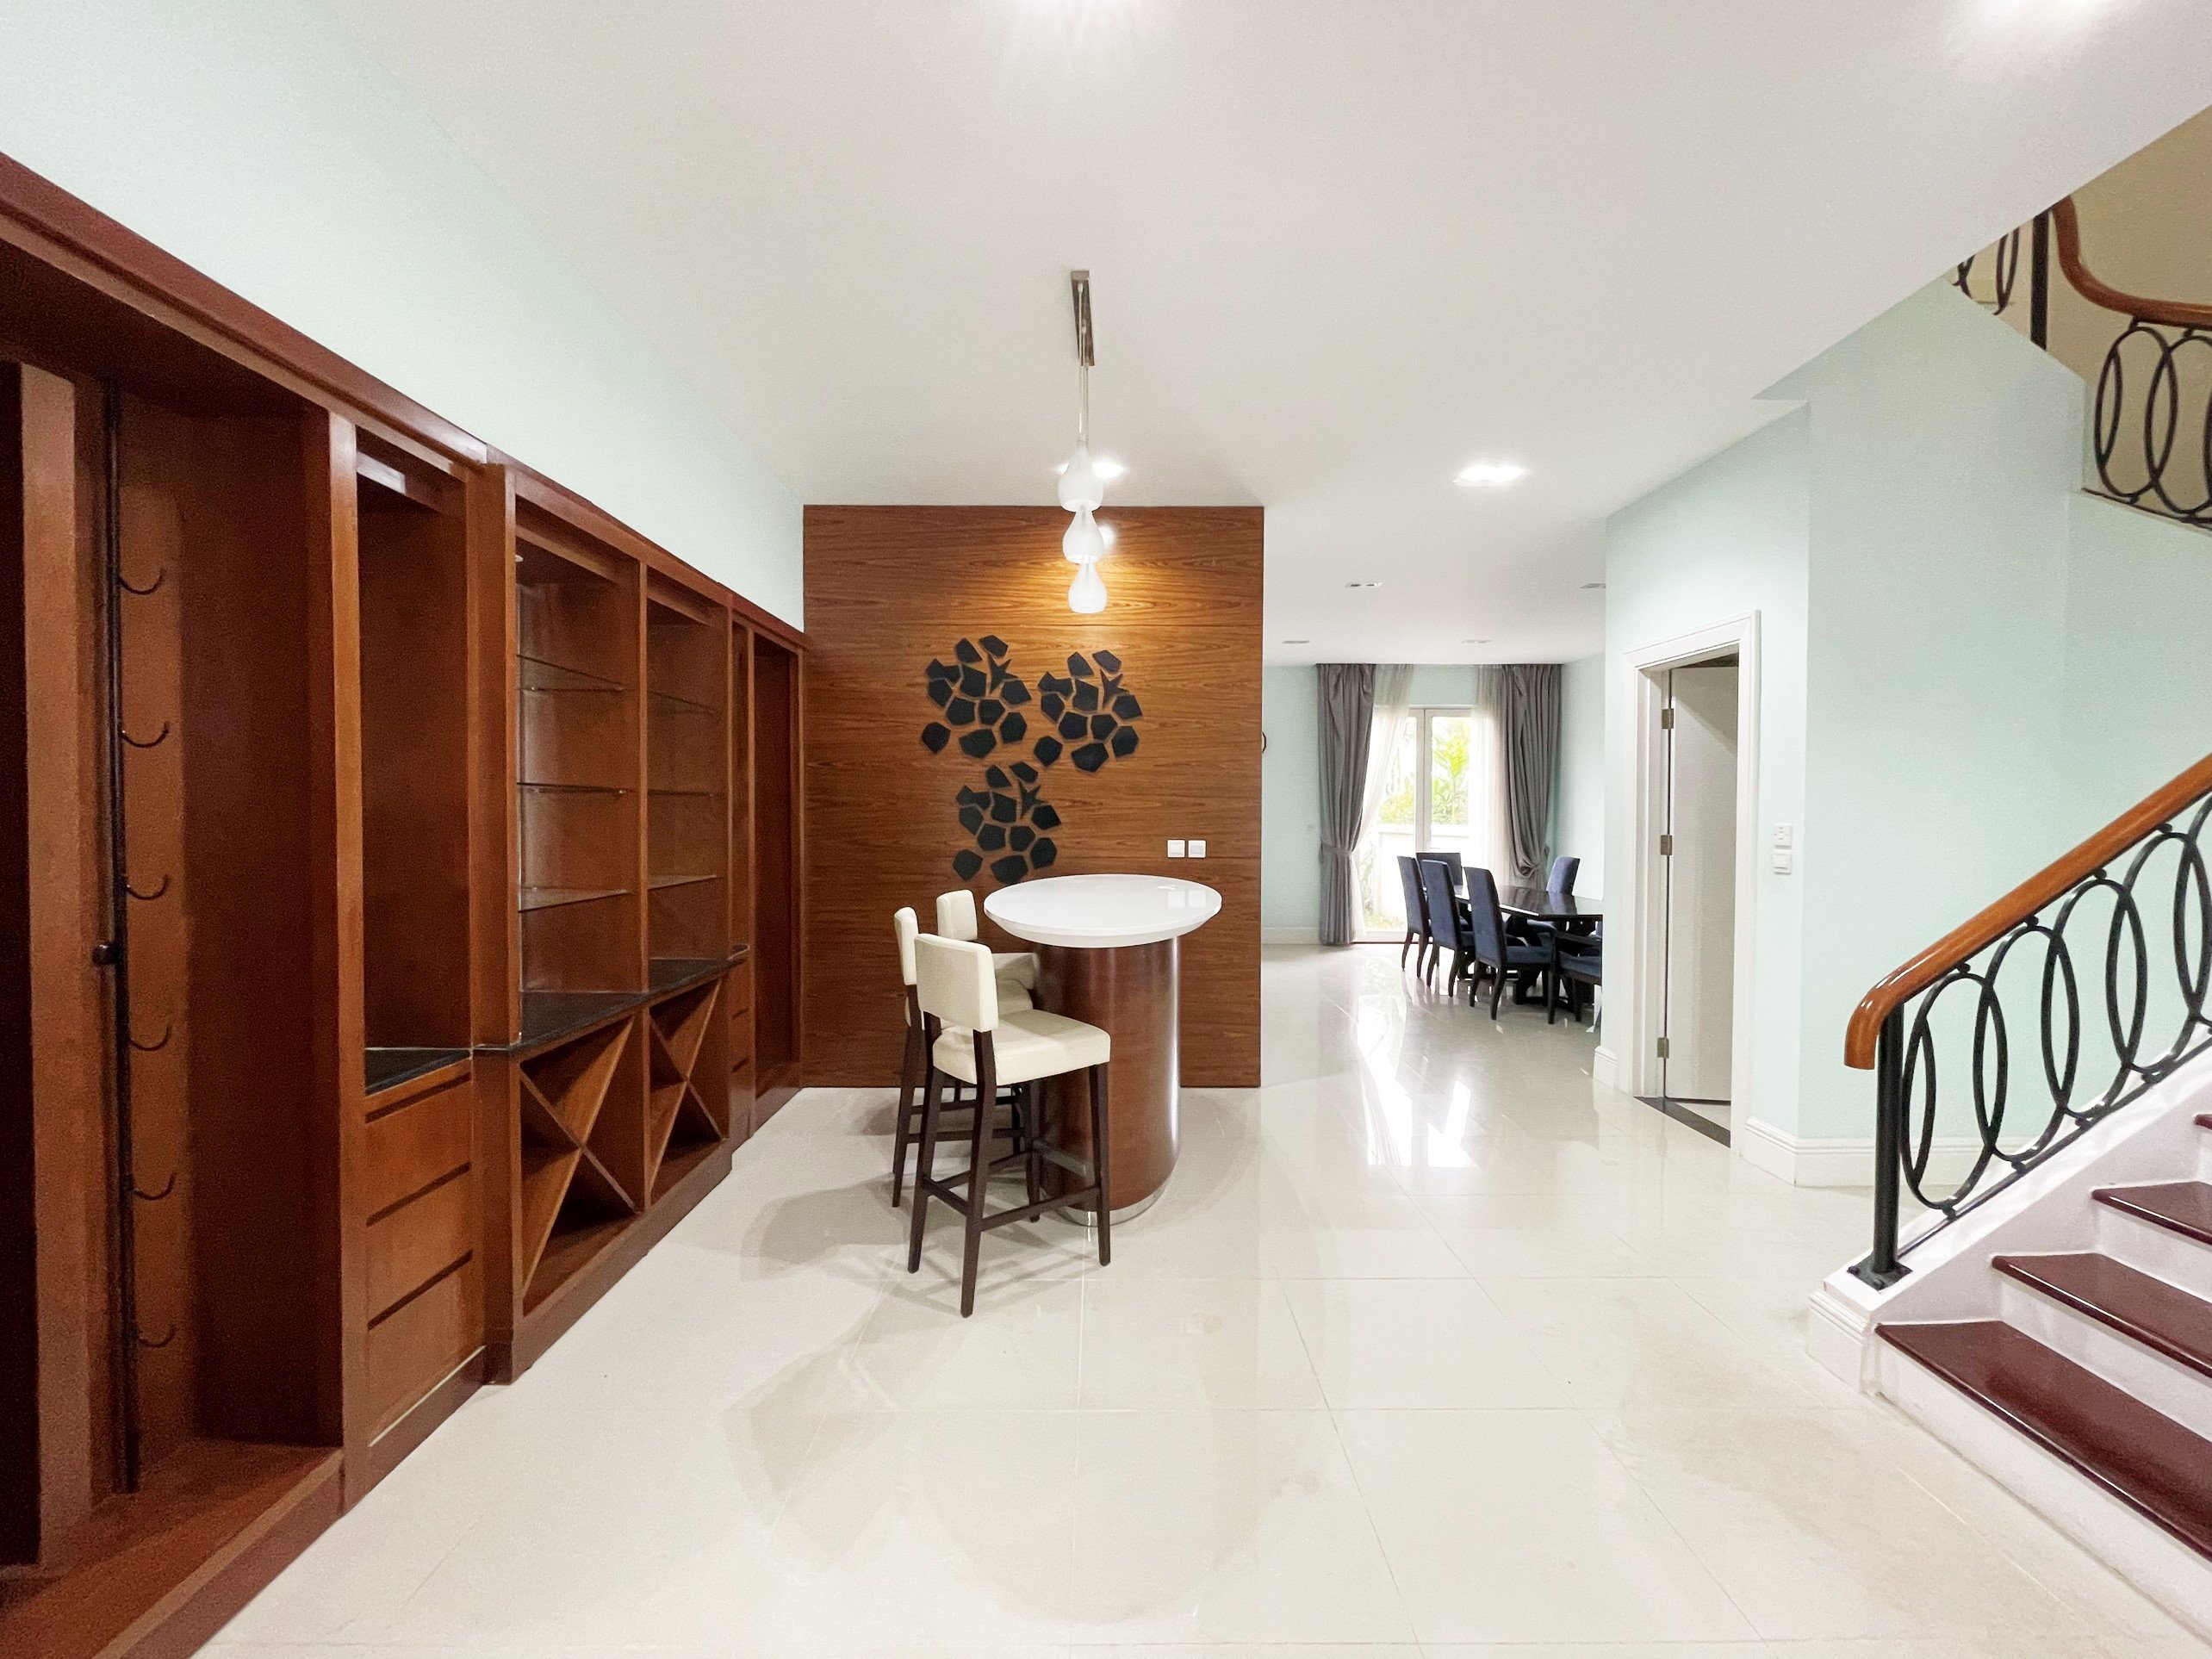 4 bedroom villa for rent in Hoa Sua block, Vinhomes Riverside, Long Bien district 5